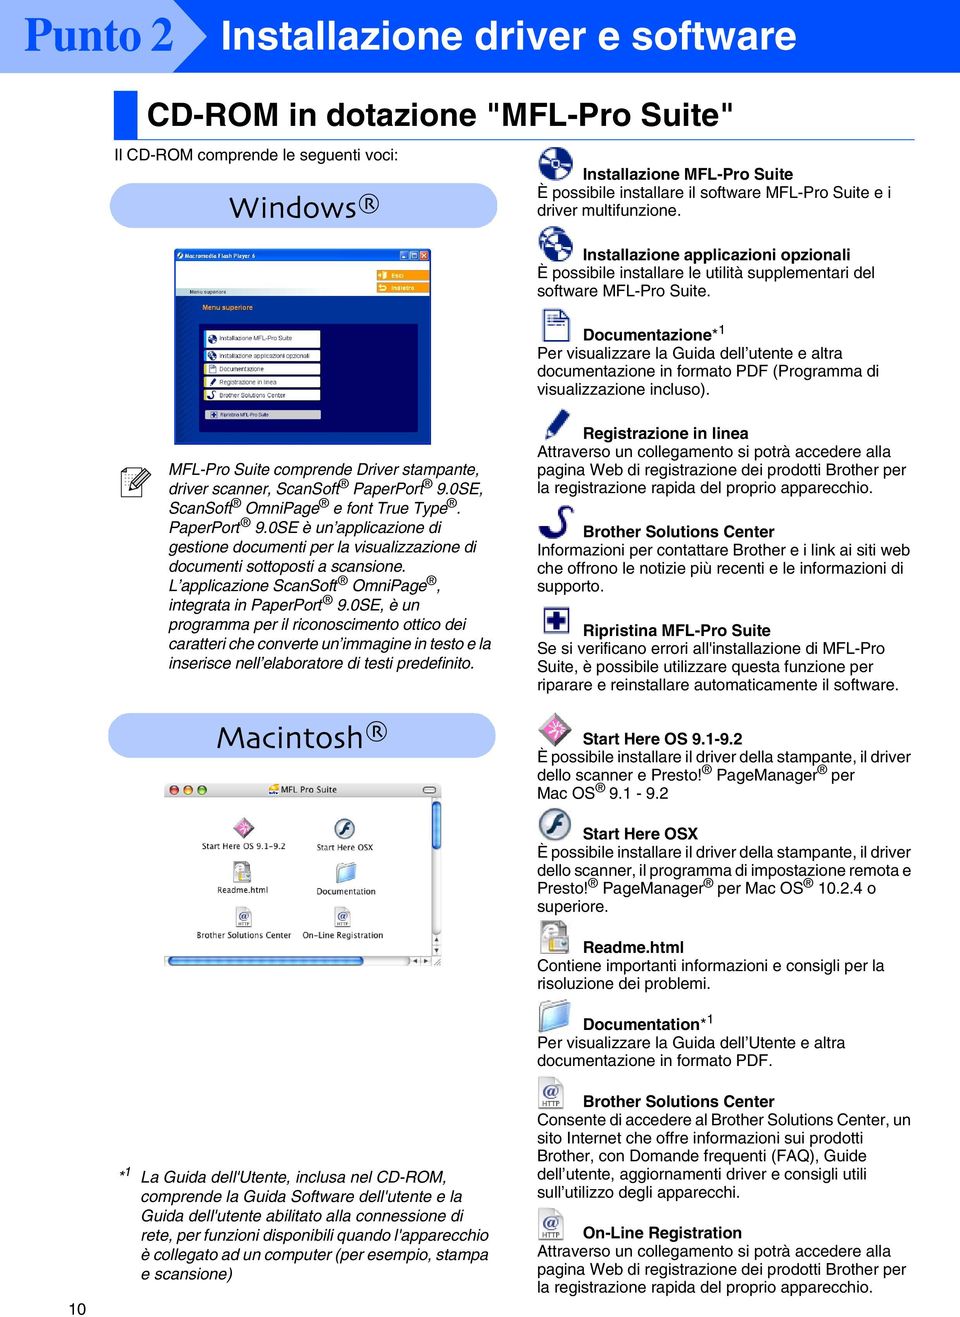 Documentazione* 1 Per visualizzare la Guida dell utente e altra documentazione in formato PDF (Programma di visualizzazione incluso).